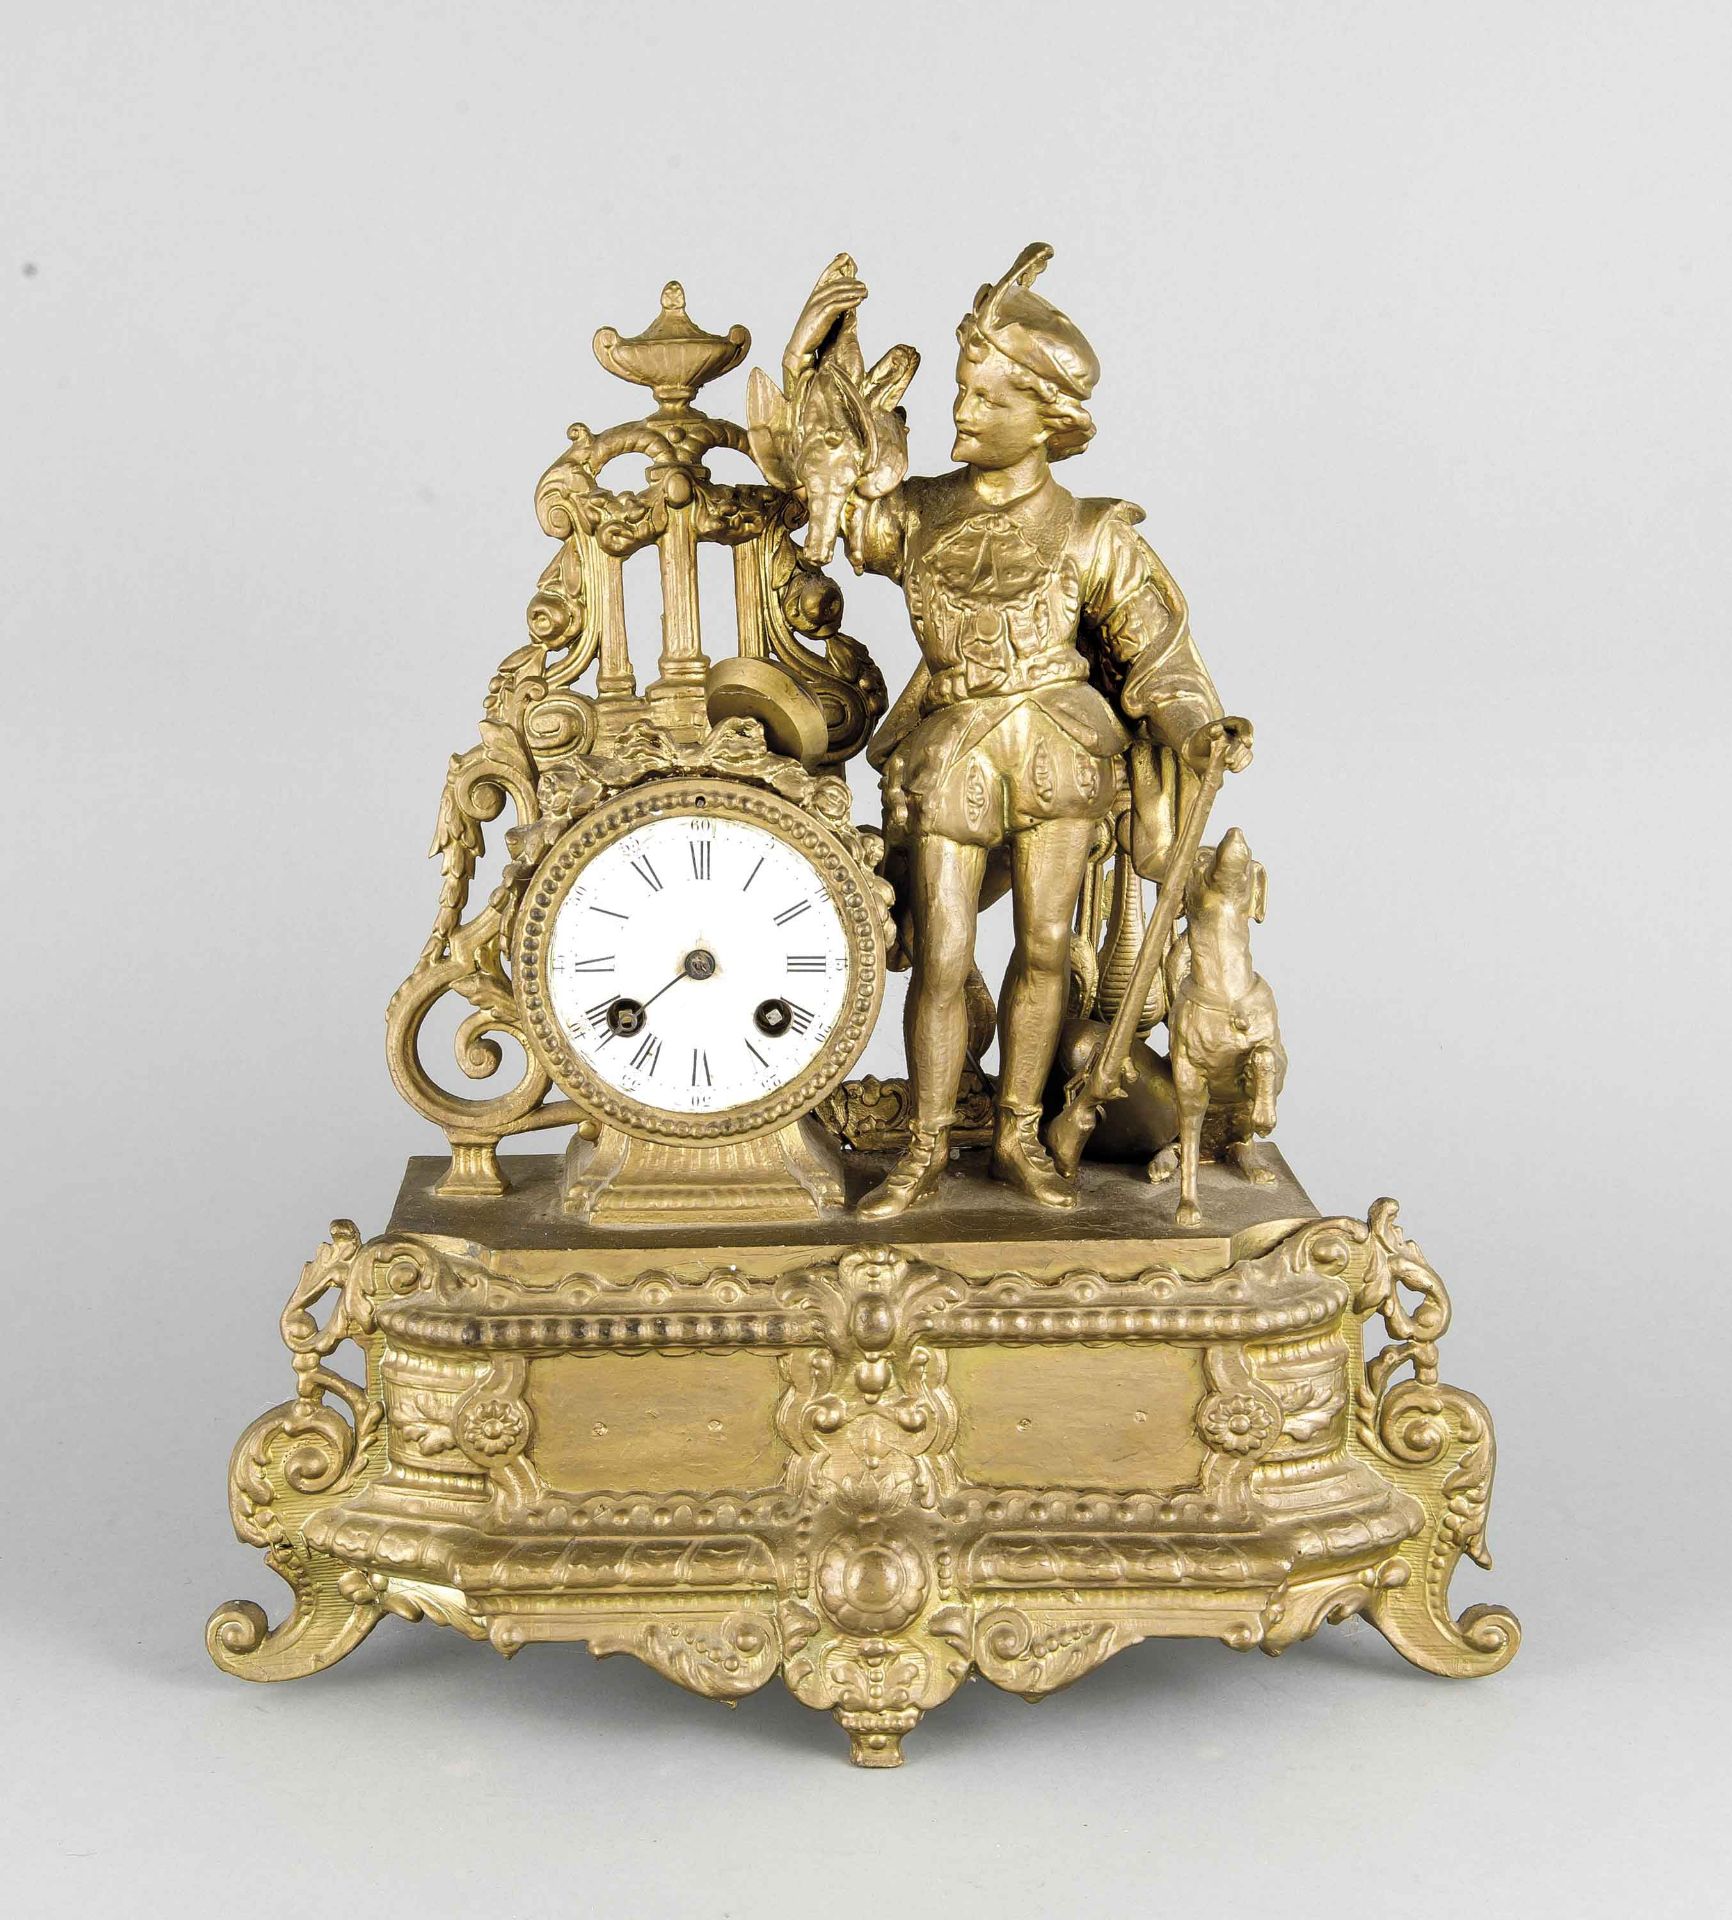 Jagdliche Figurenpendule, Frankreich Mitte 19. Jh., bronziertes Metallgussgehäuse mitvollplastischer